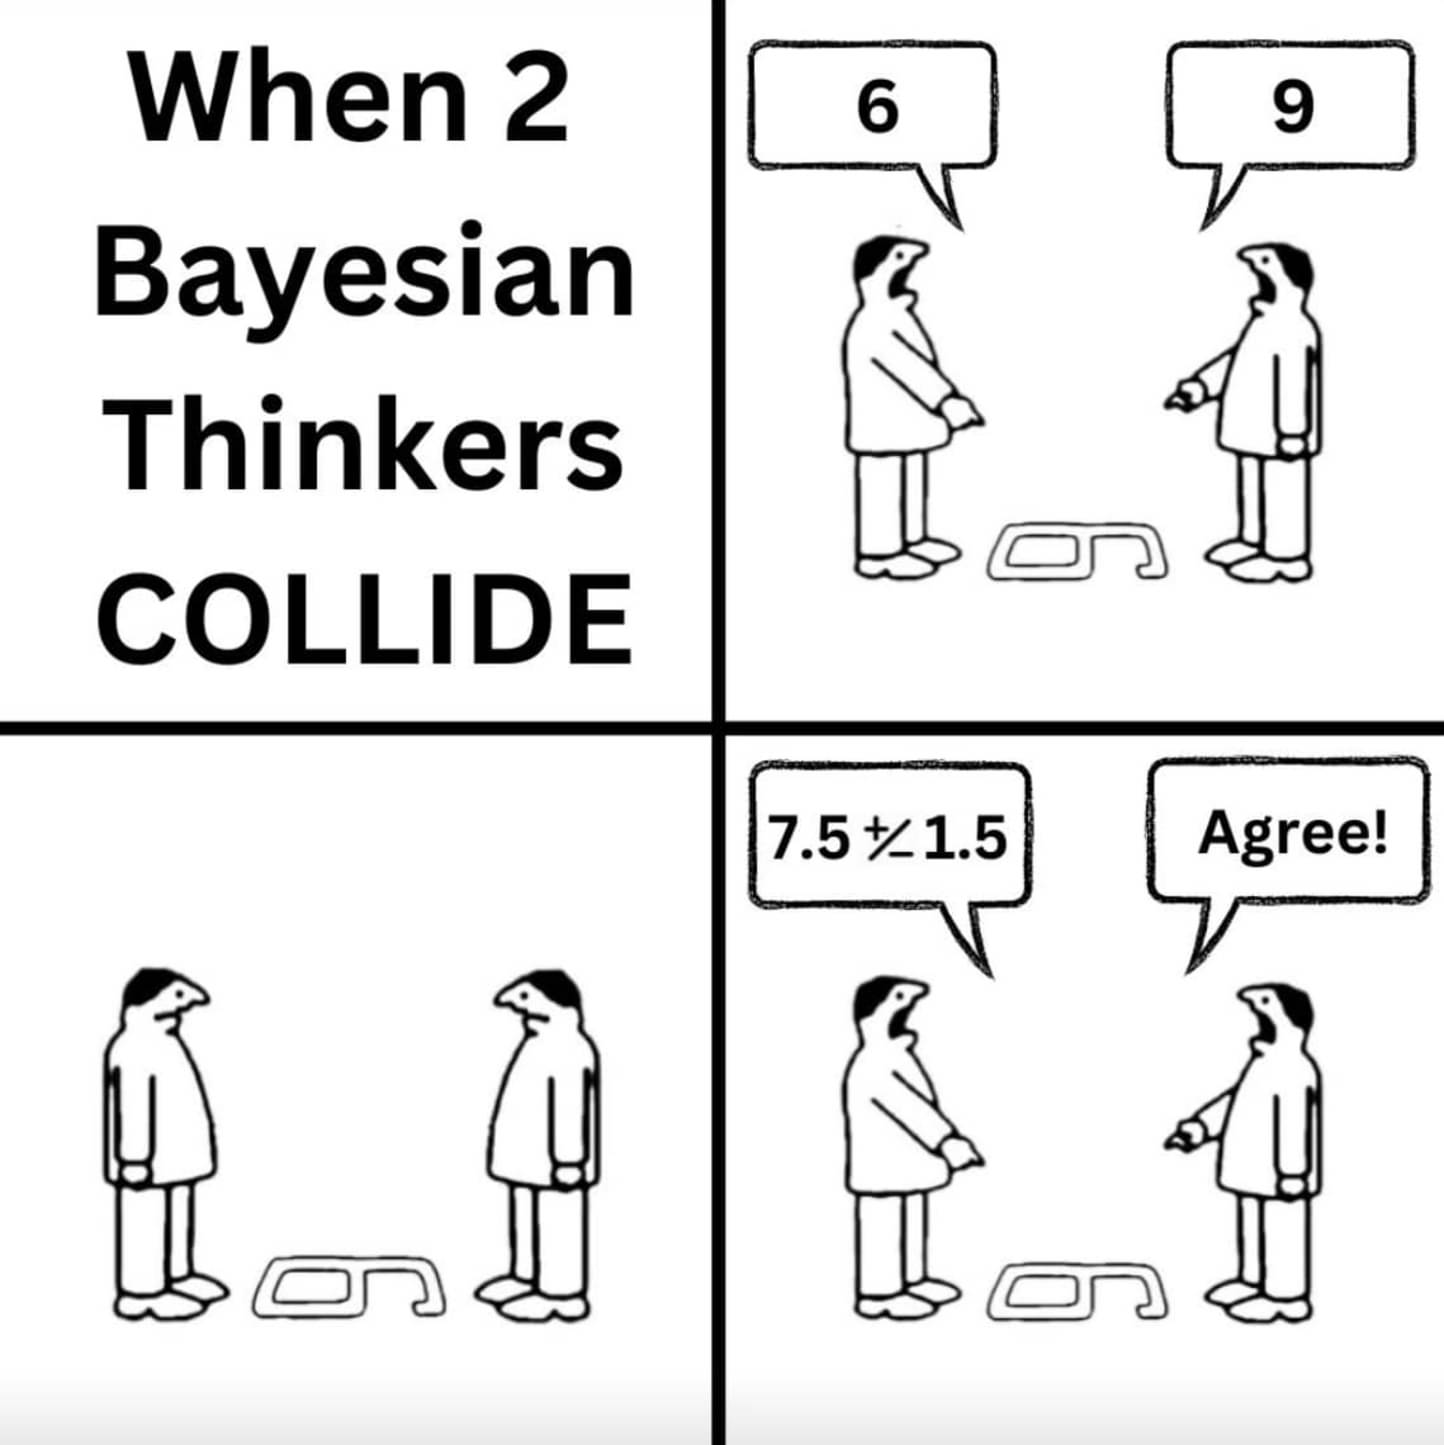 bayesian_thinkers.jpg